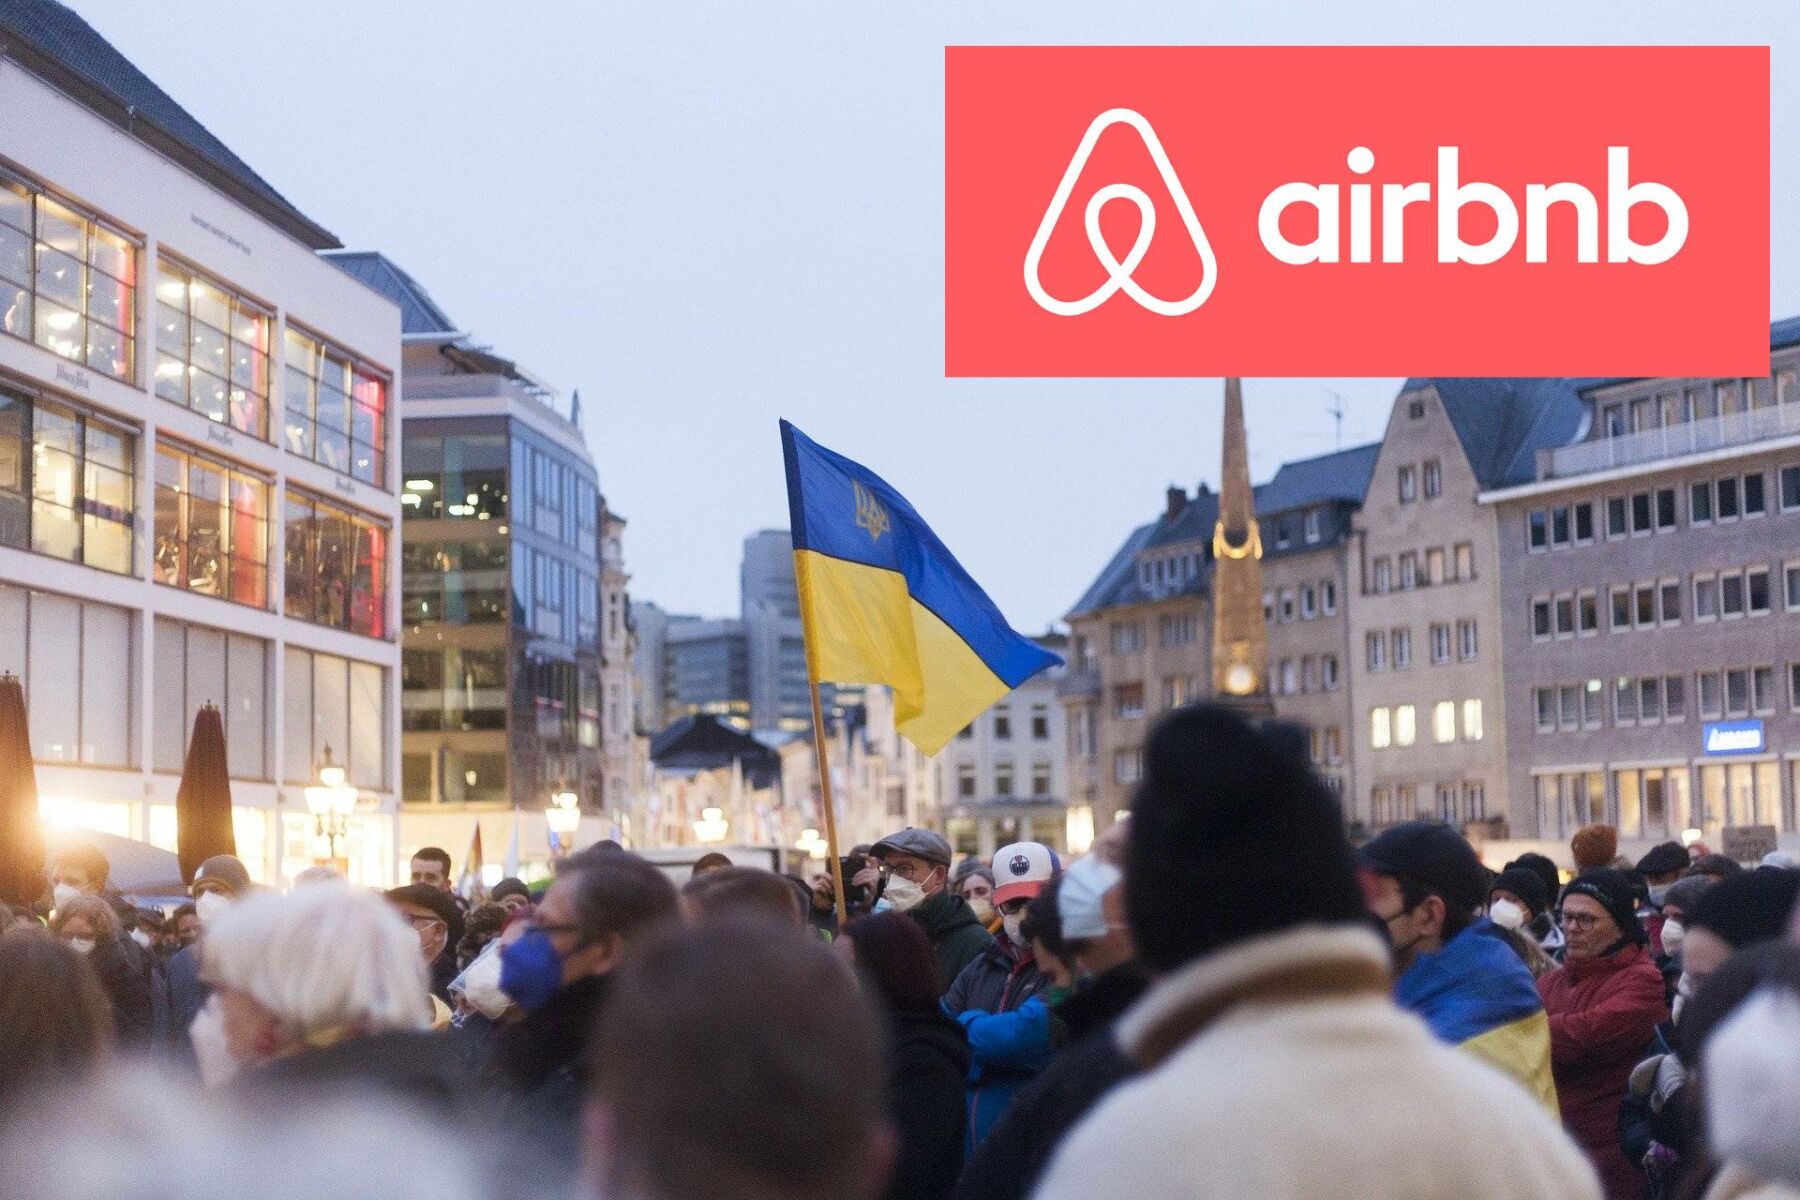 ยูเครน airbnb